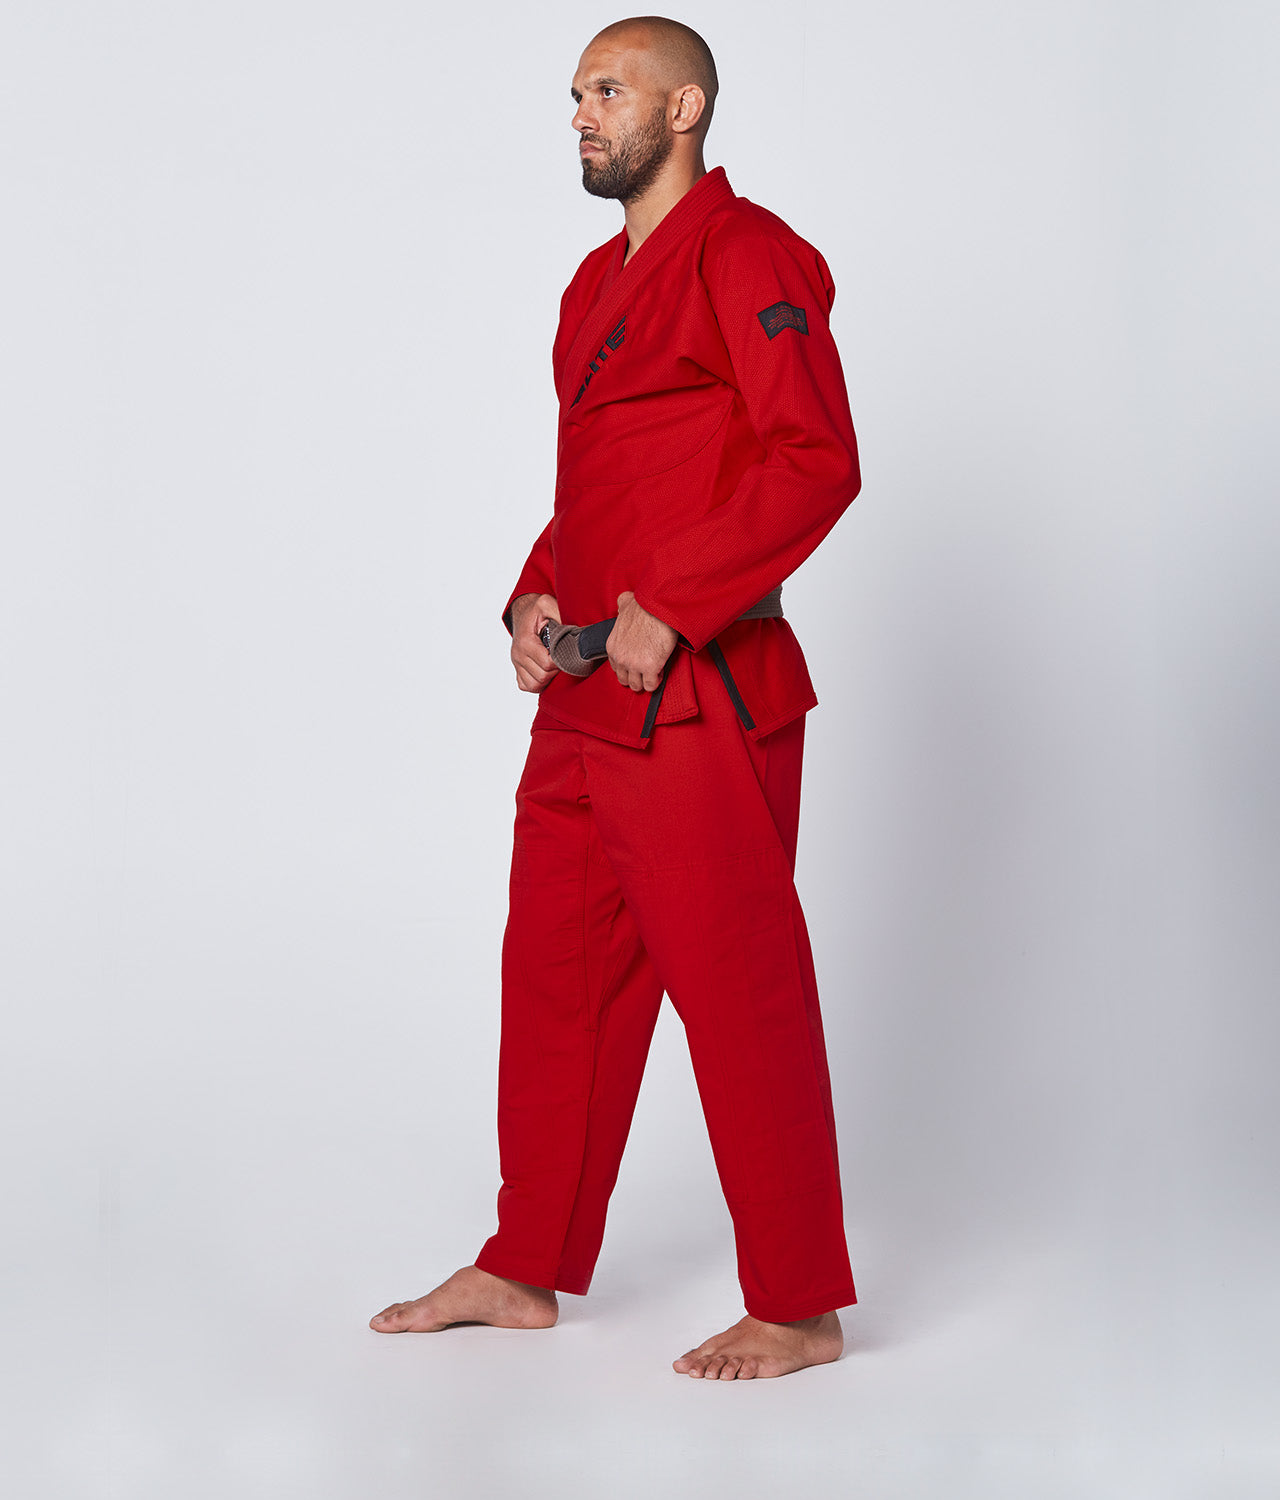 Elite Sports Men's Core Red Brazilian Jiu Jitsu BJJ Gi Side View